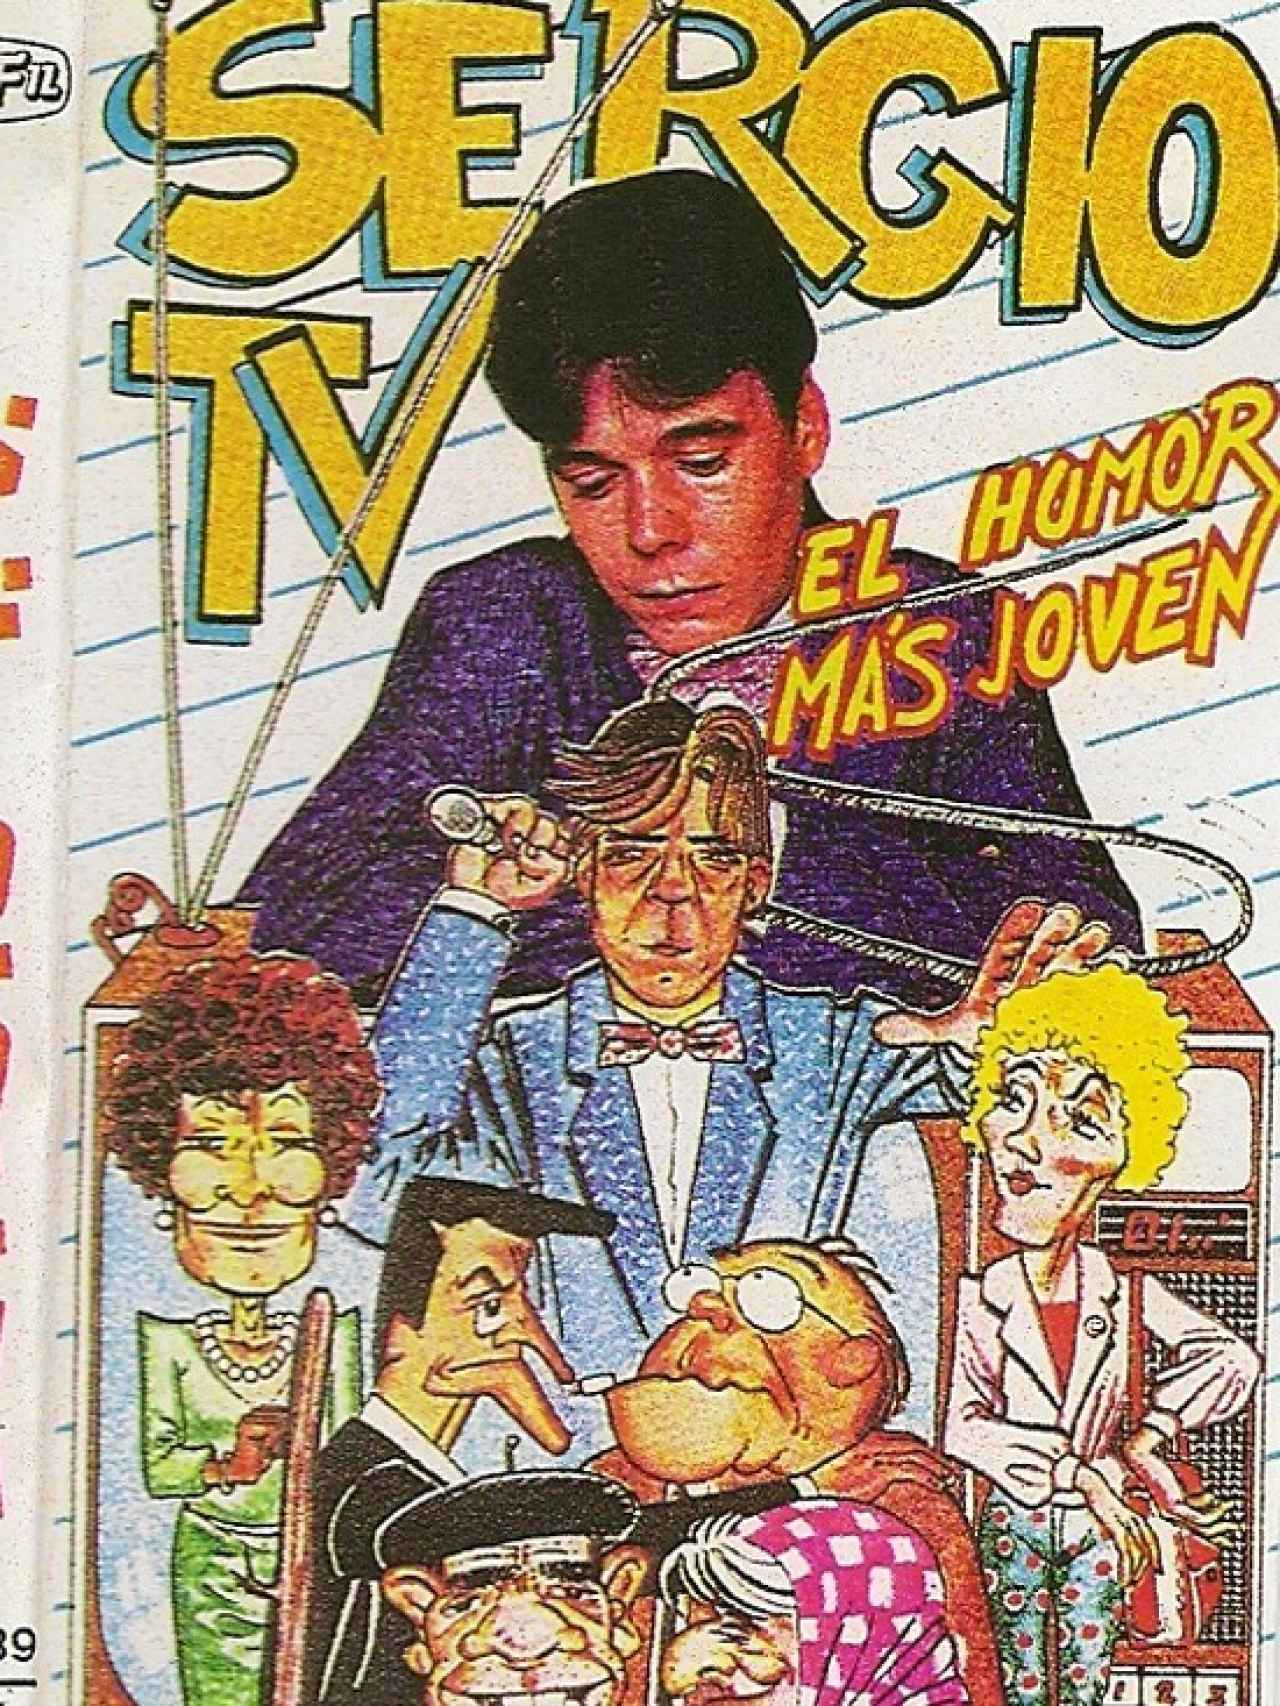 Portada de un casete de SergioTV, el pseudónimo de Juan Muñoz.